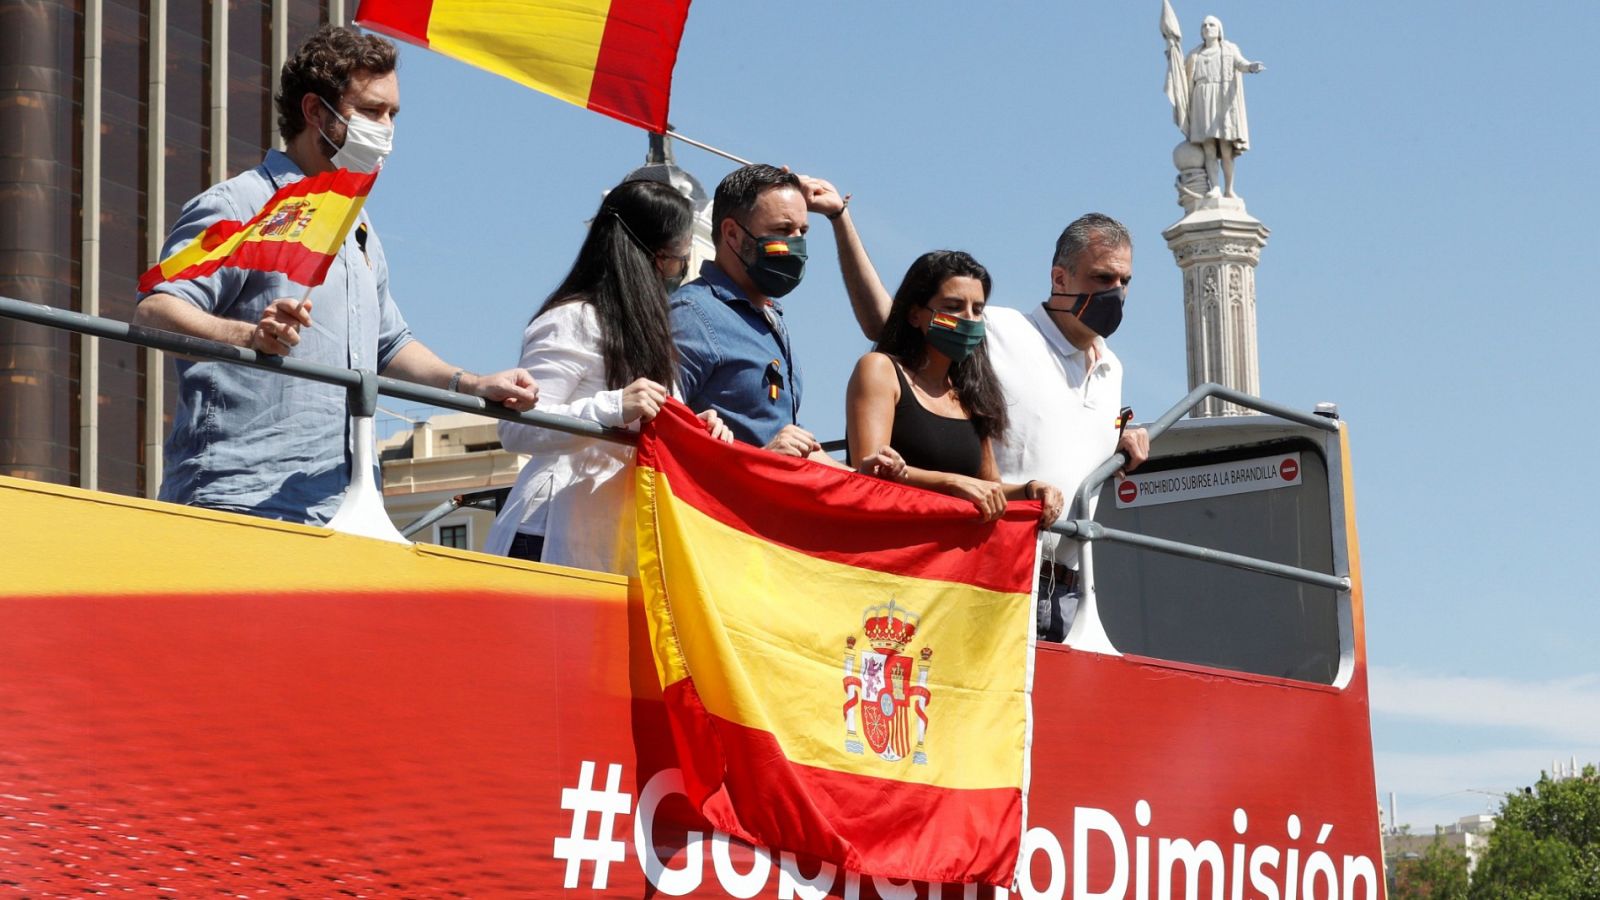 La manifestación de Vox en Madrid arranca con centenares de manitestantes en sus vehículos pidiendo "libertad" - RTVE.es